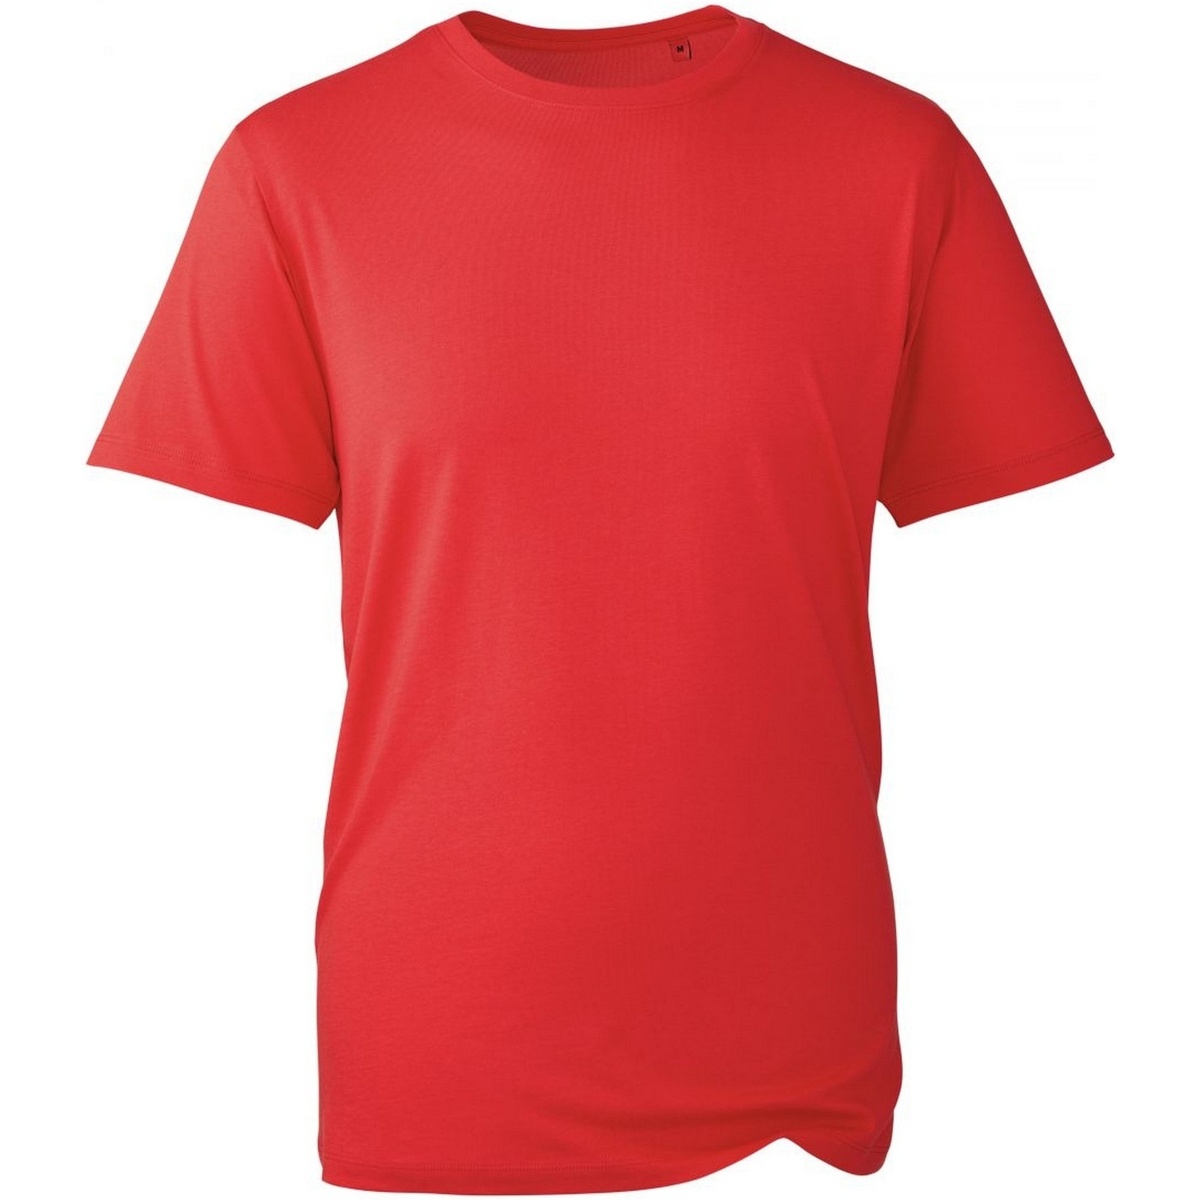 Vêtements Homme T-shirts manches courtes Anthem AM010 Rouge